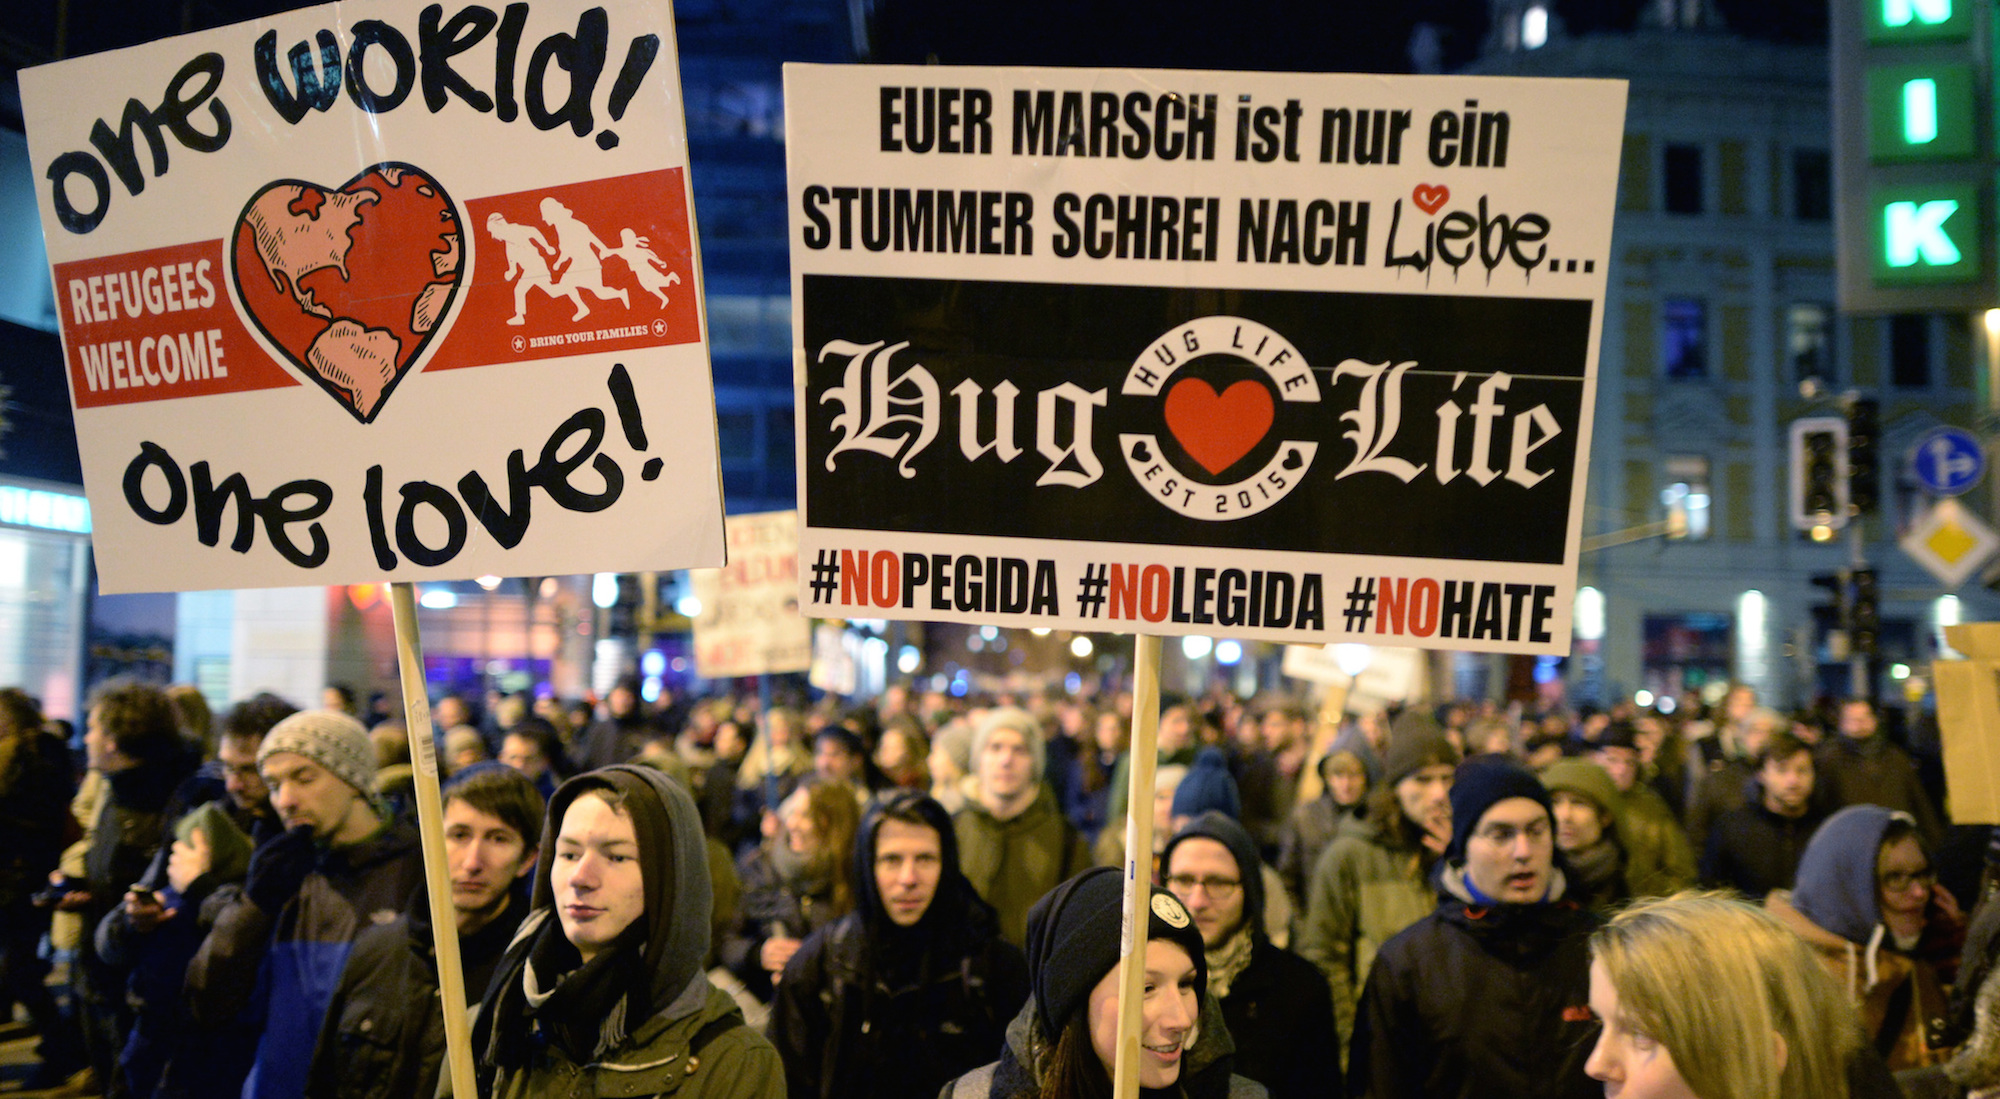 Foto: Protest gegen die rechtsradikale Legida-Bewegung in Leipzig